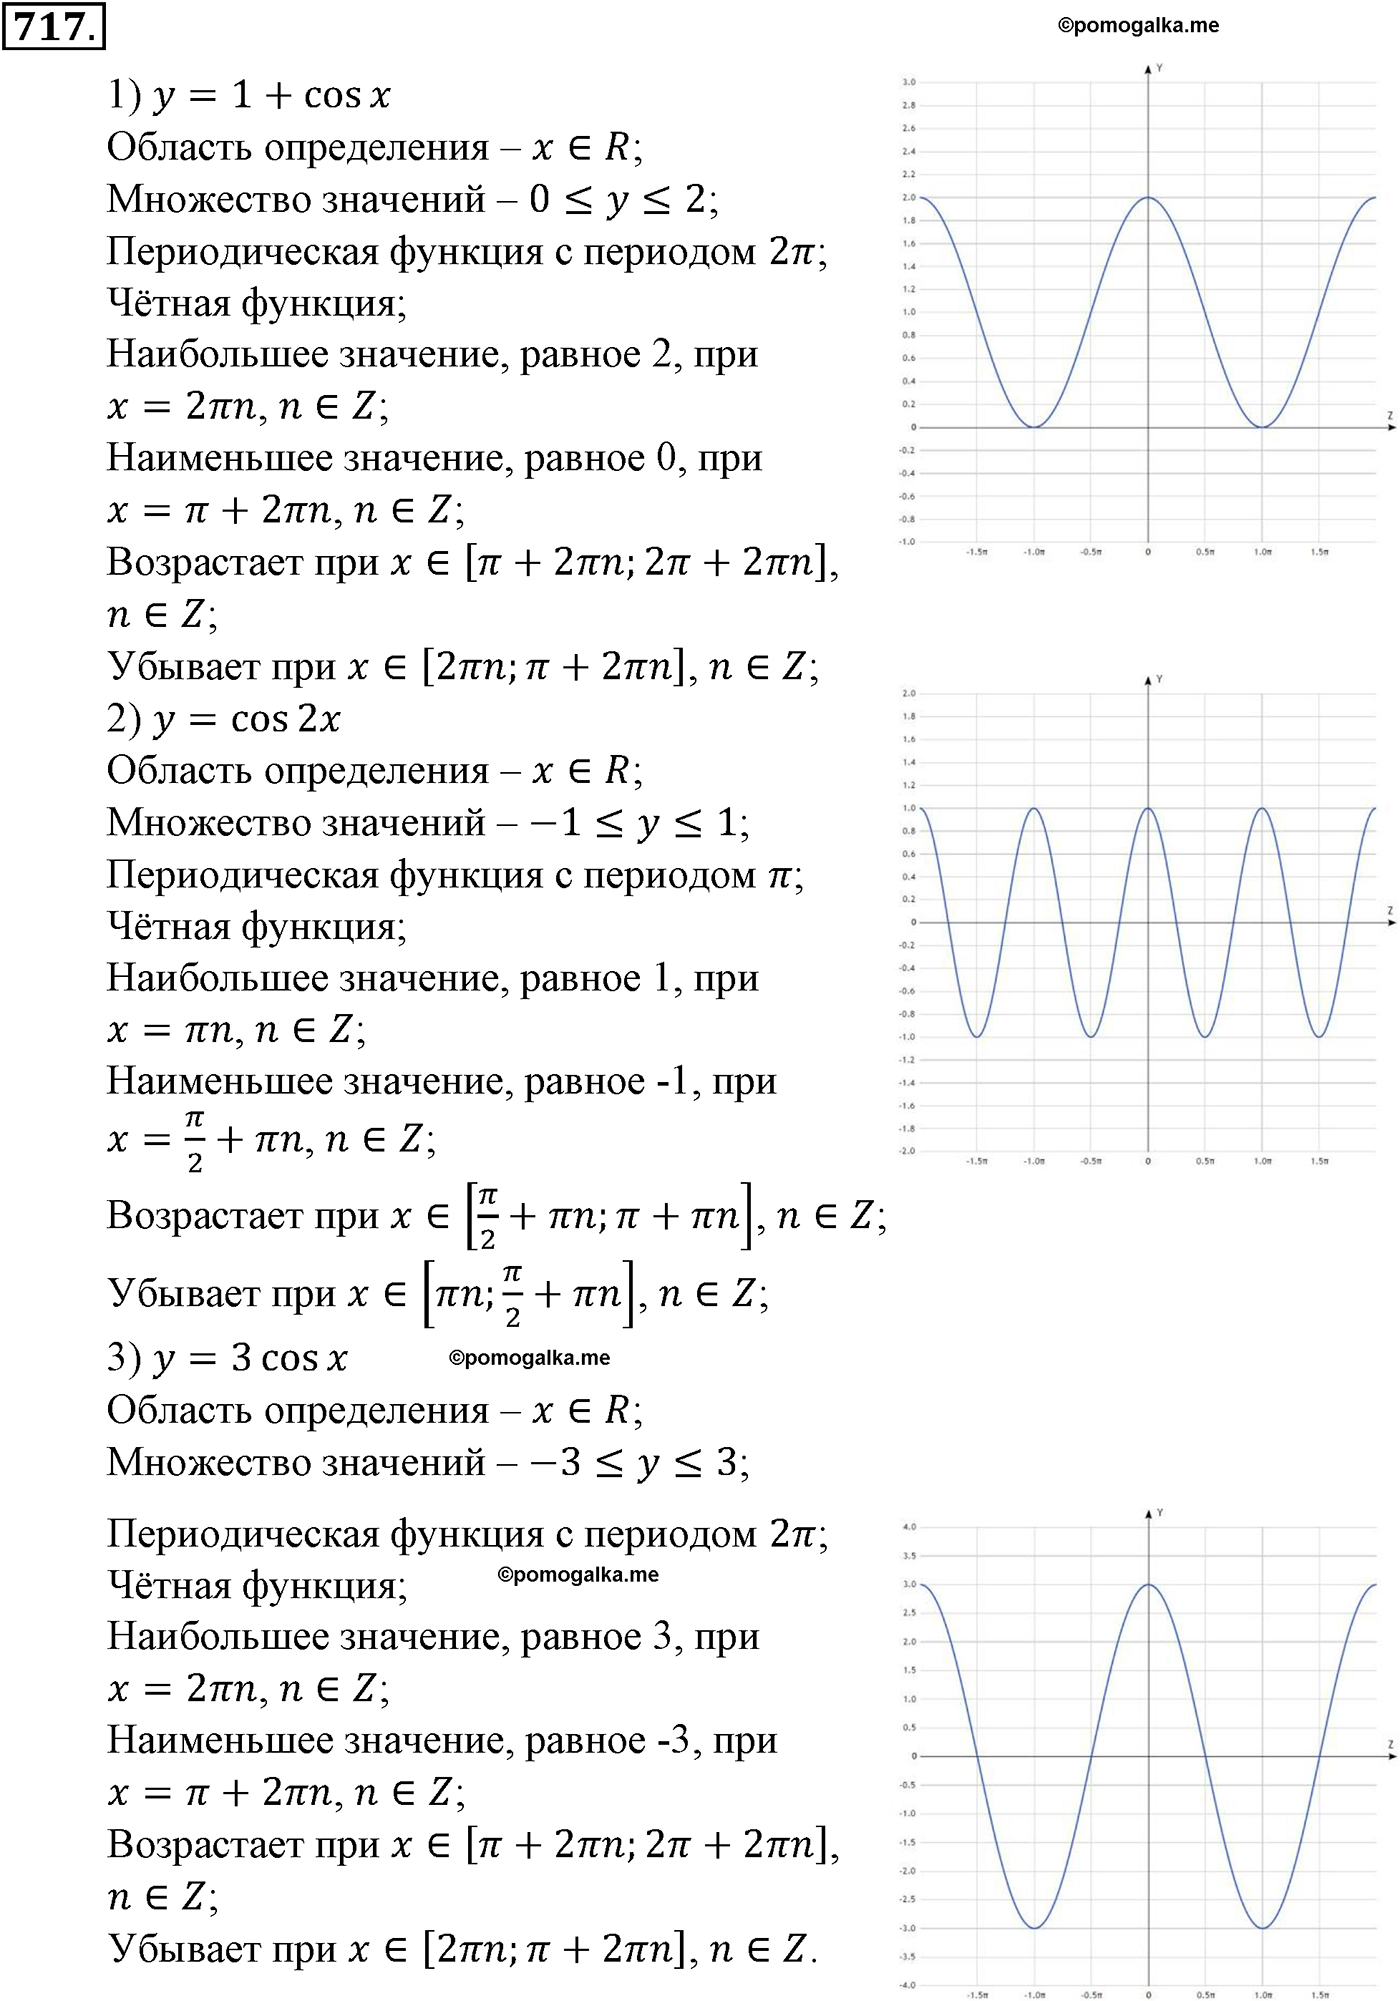 разбор задачи №717 по алгебре за 10-11 класс из учебника Алимова, Колягина